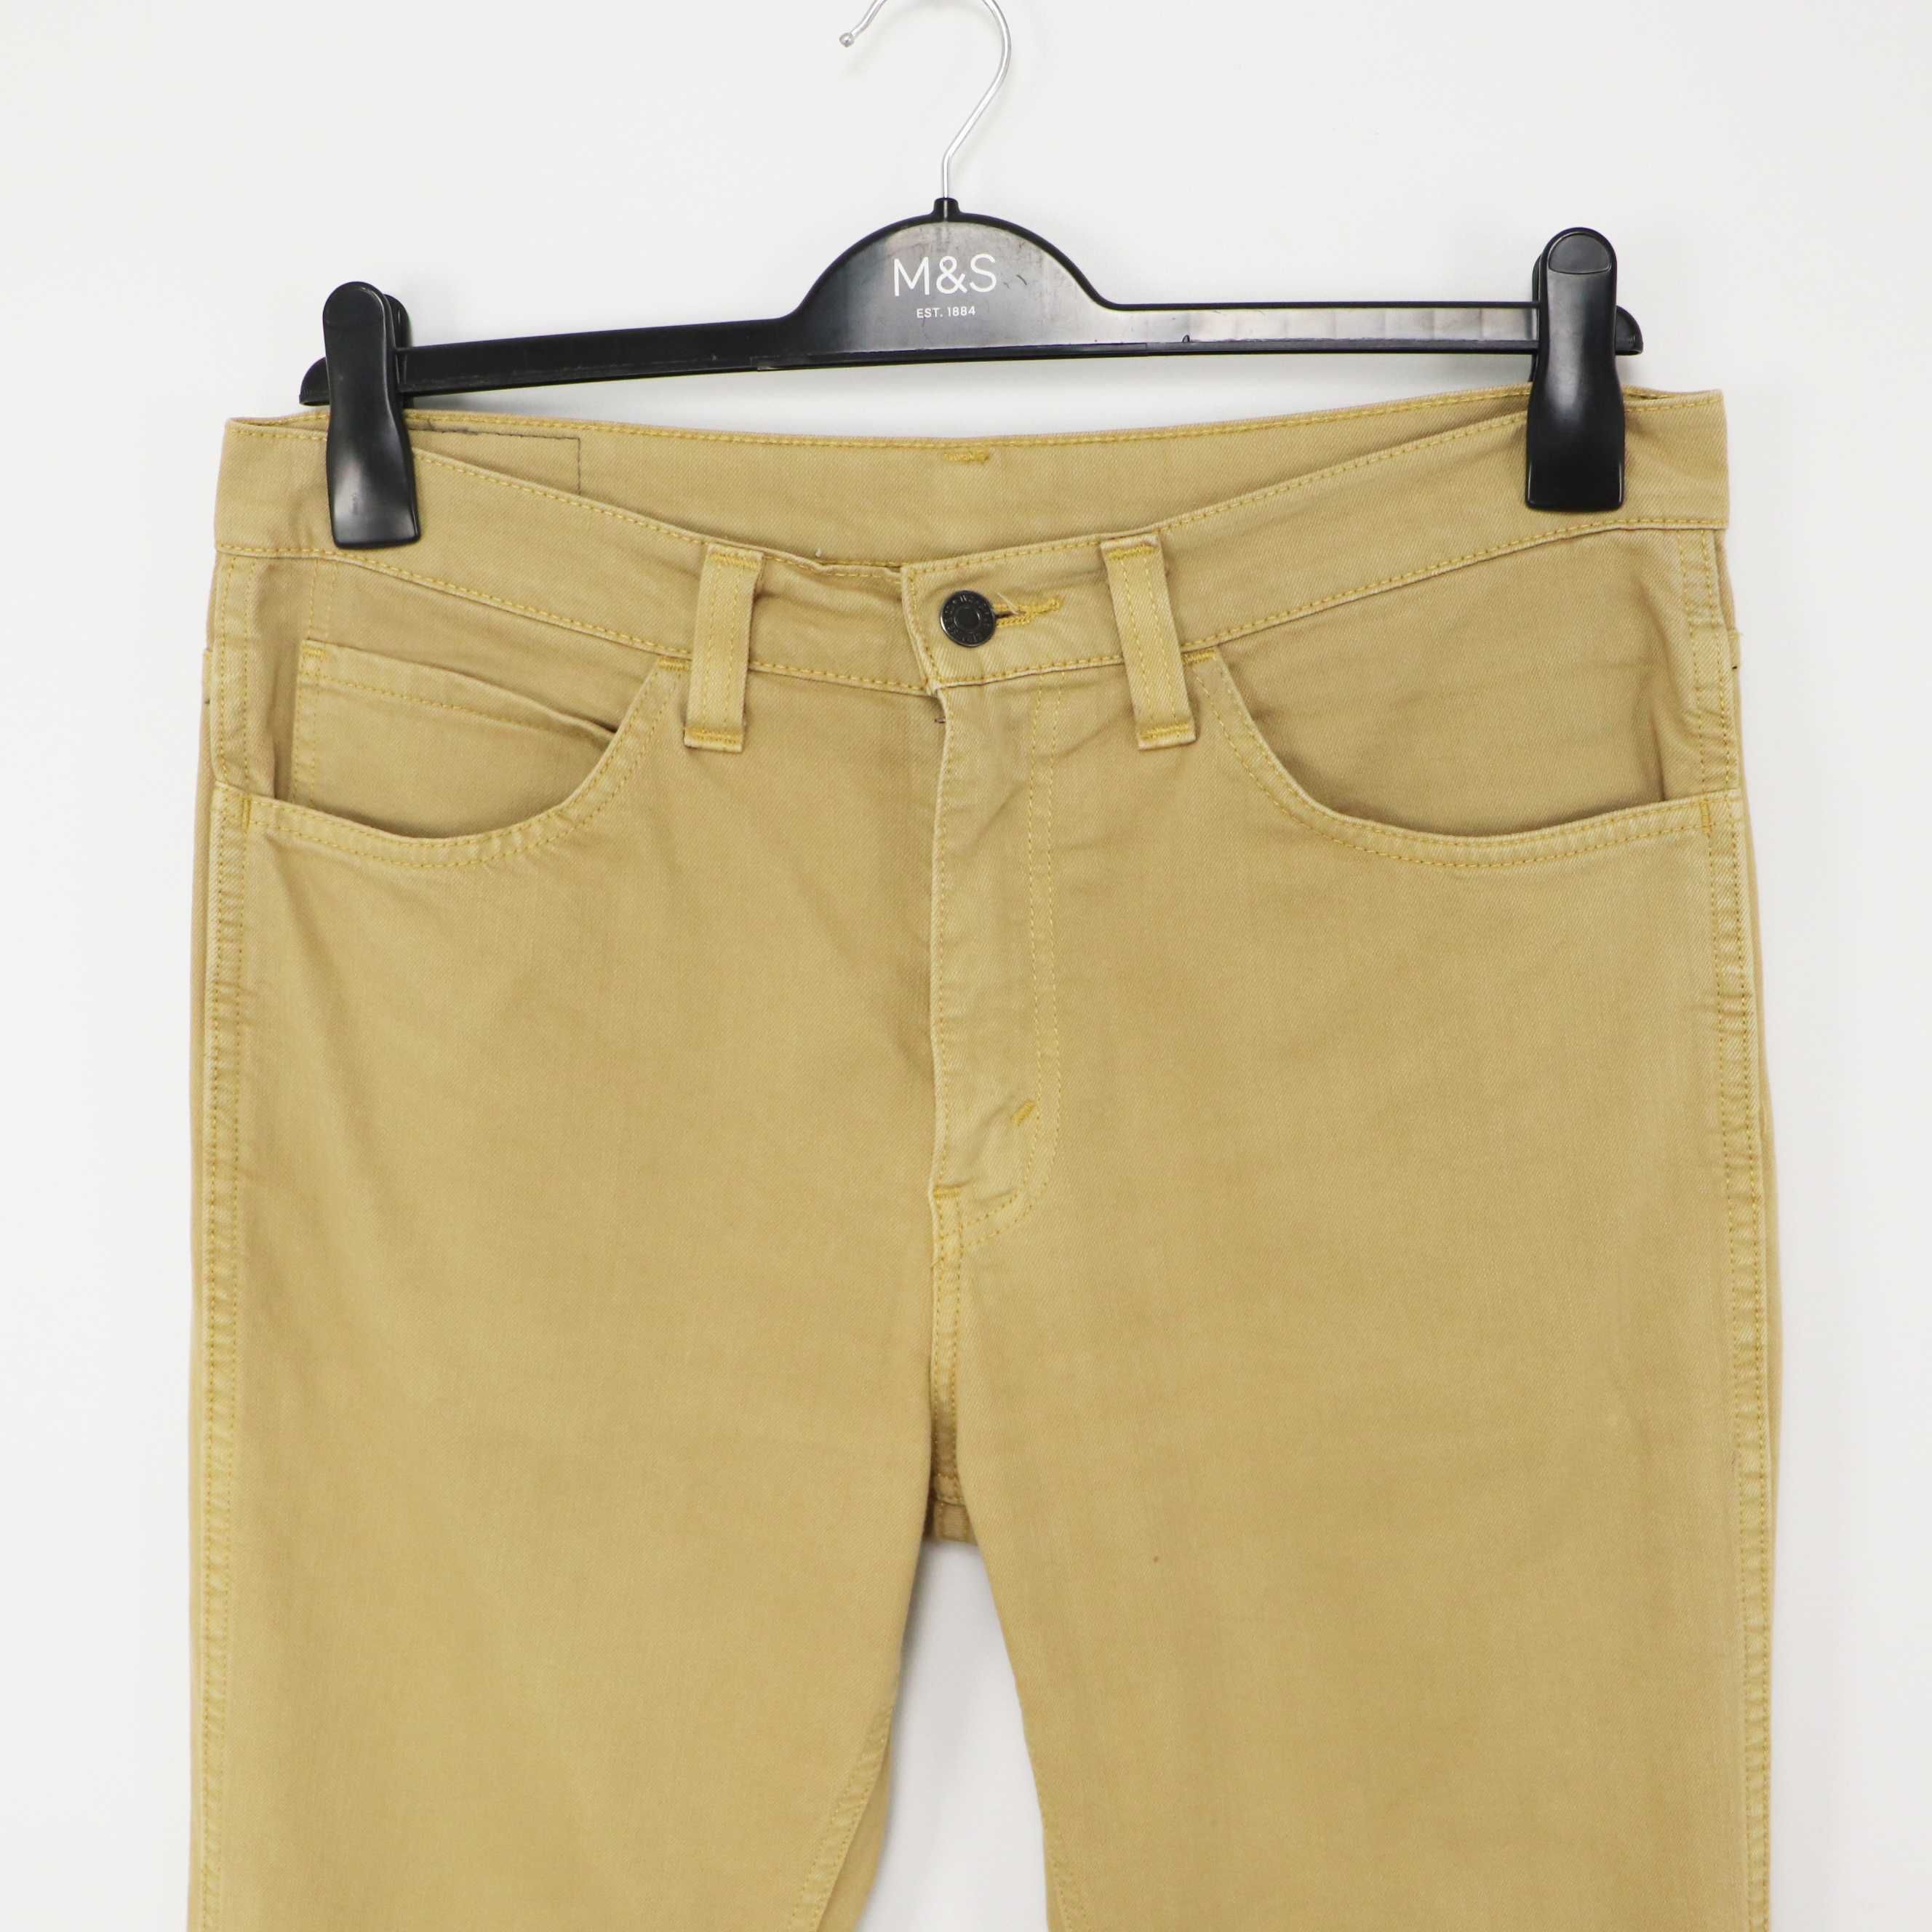 Чоловічі бежеві штани джинси Levi’s 511 оригінал [ 34x32 ]